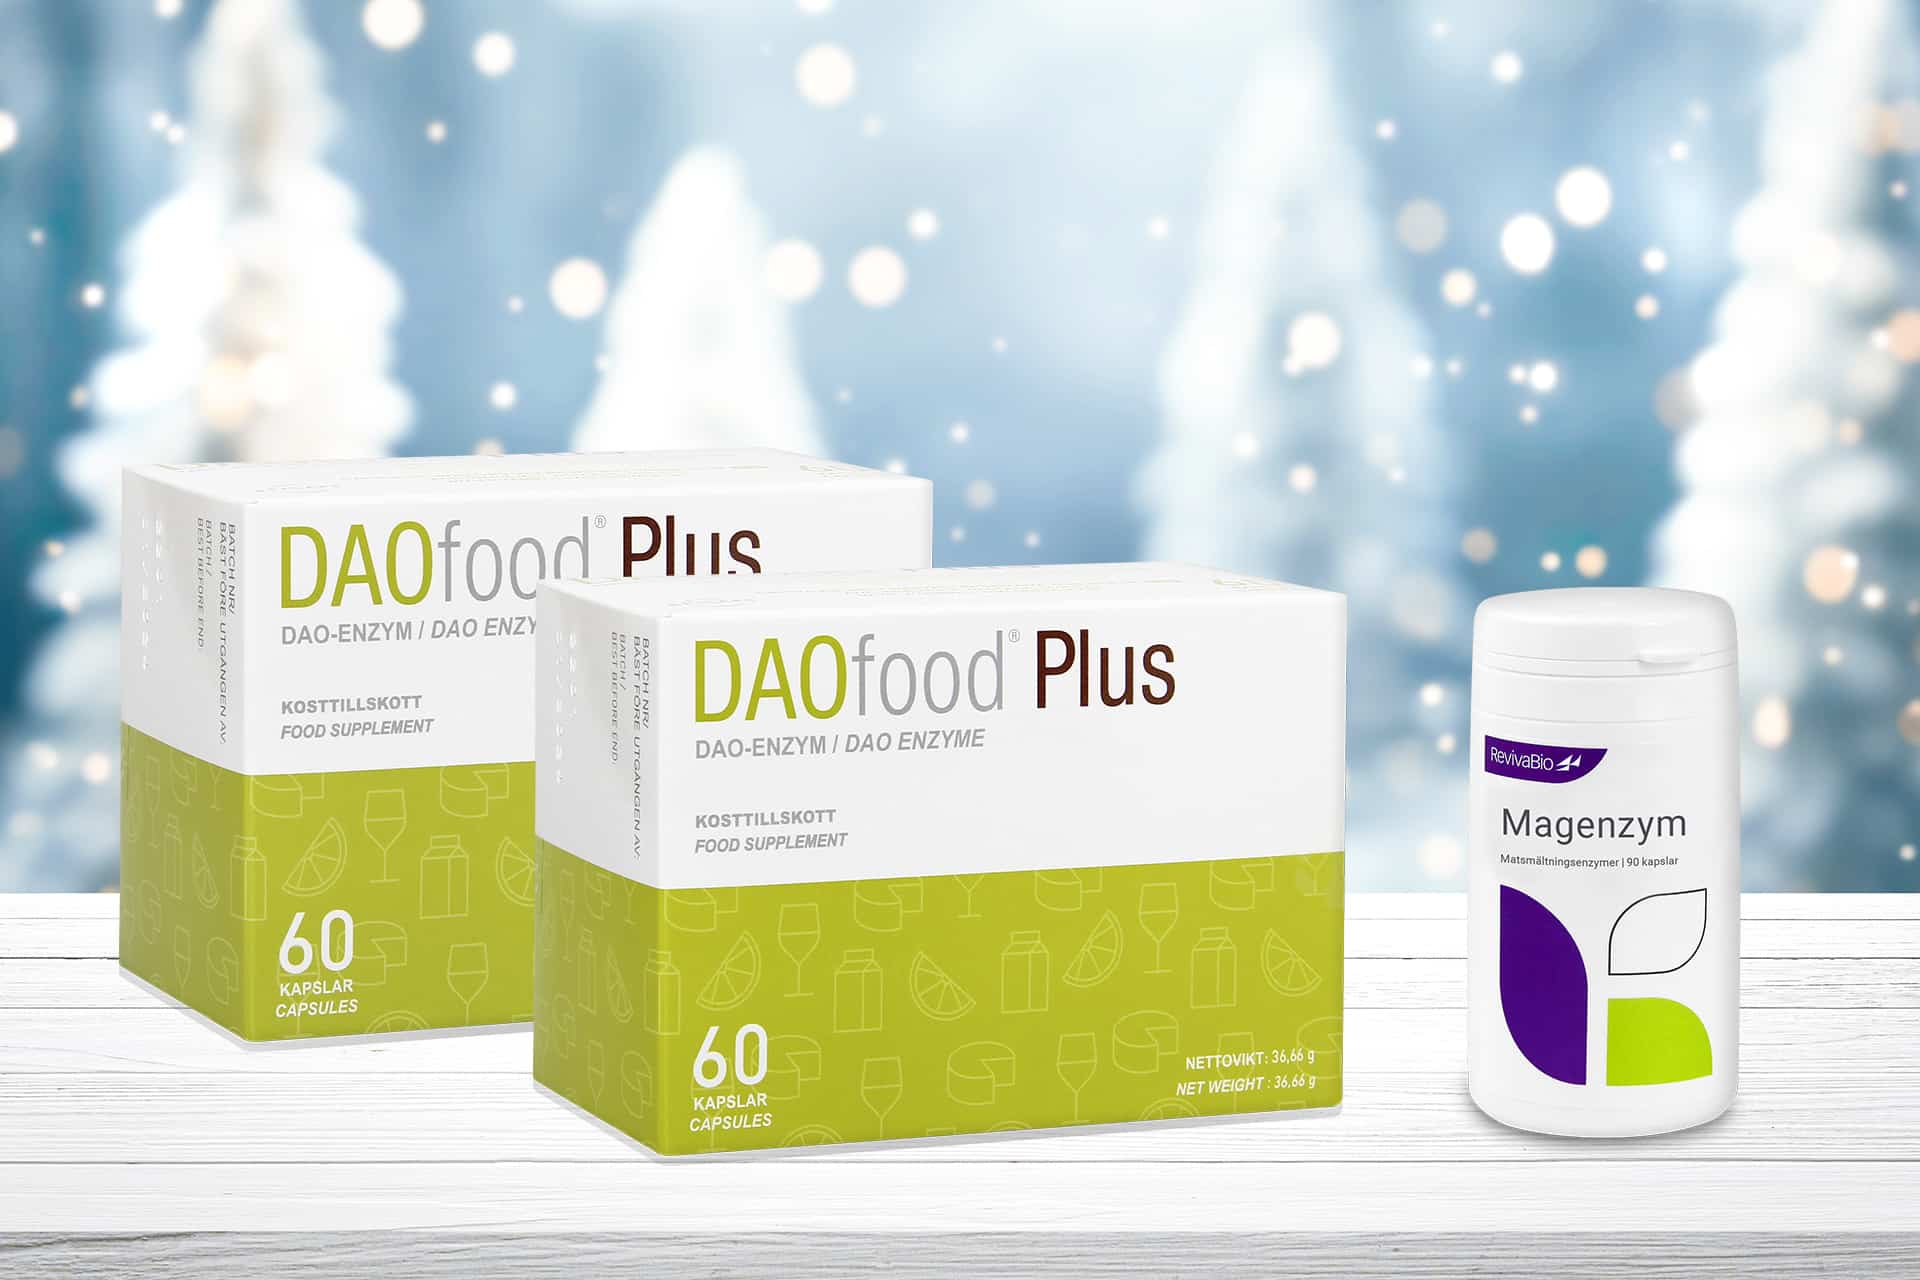 Köp två DAOfood Plus som innehåller DAO-enzym, quercetin samt C-vitamin och få en Magenzym 90 kapslar i gåva.